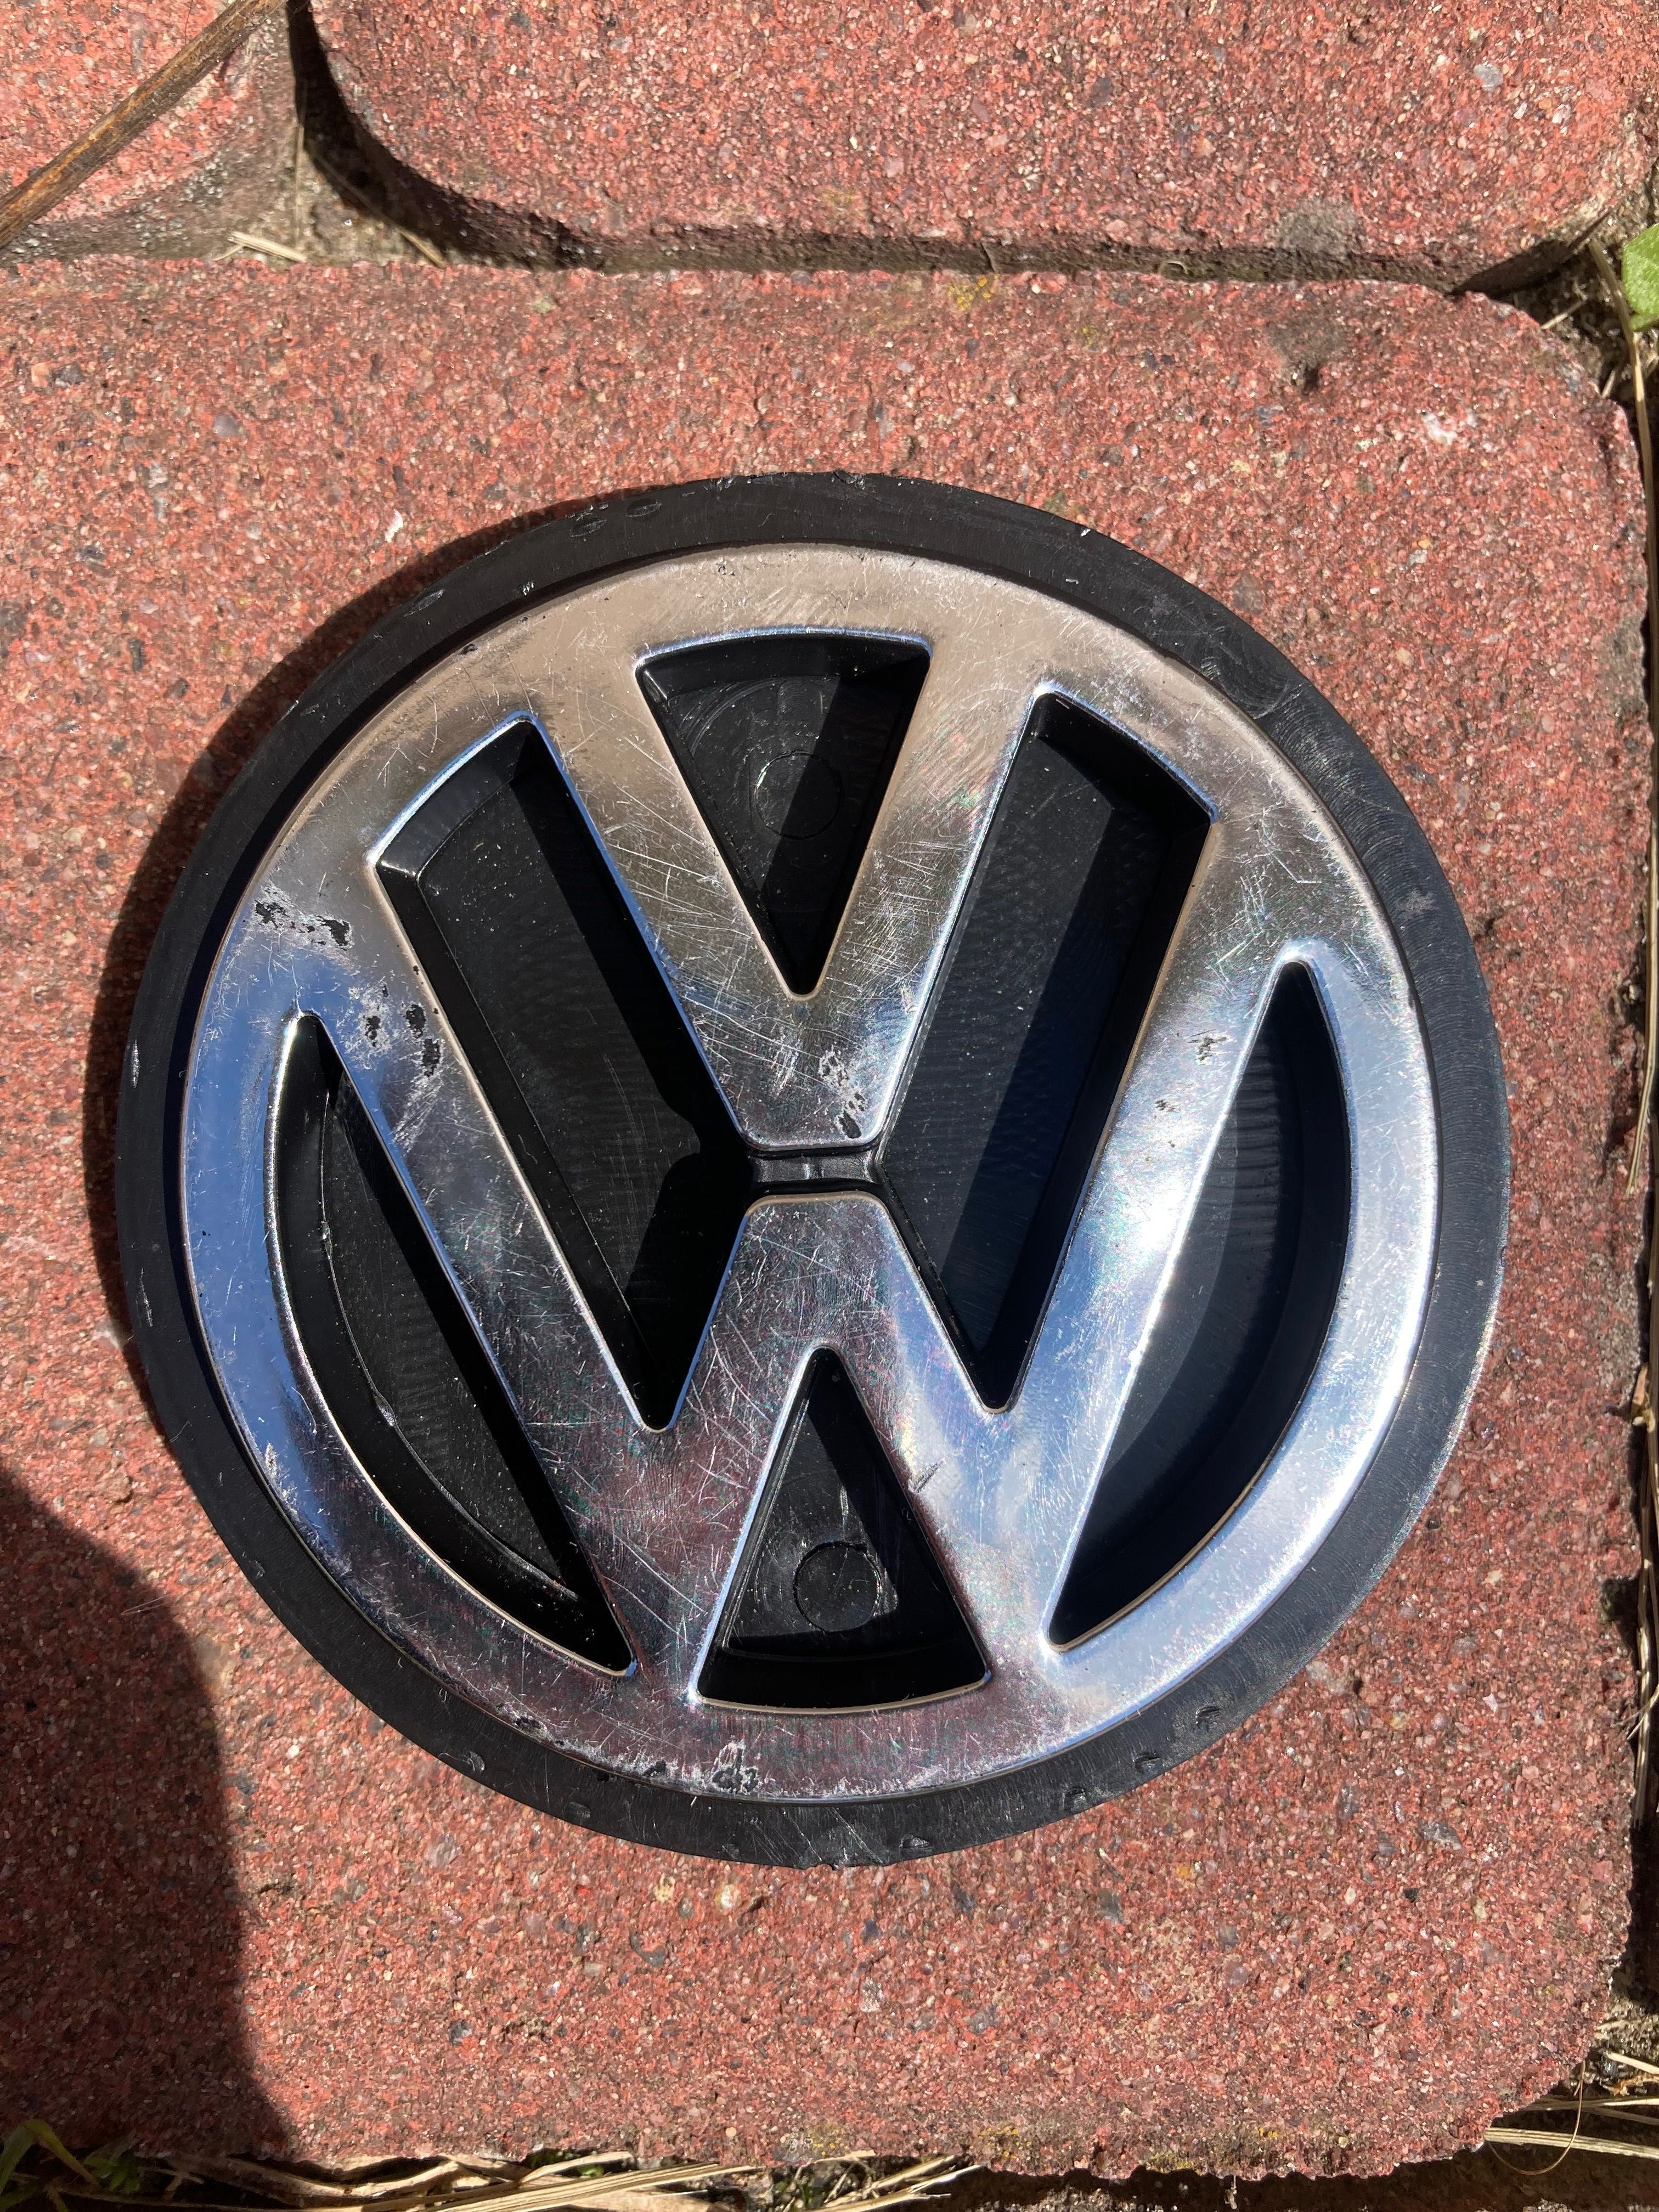 Емблема значок VW Volkswagen пластик